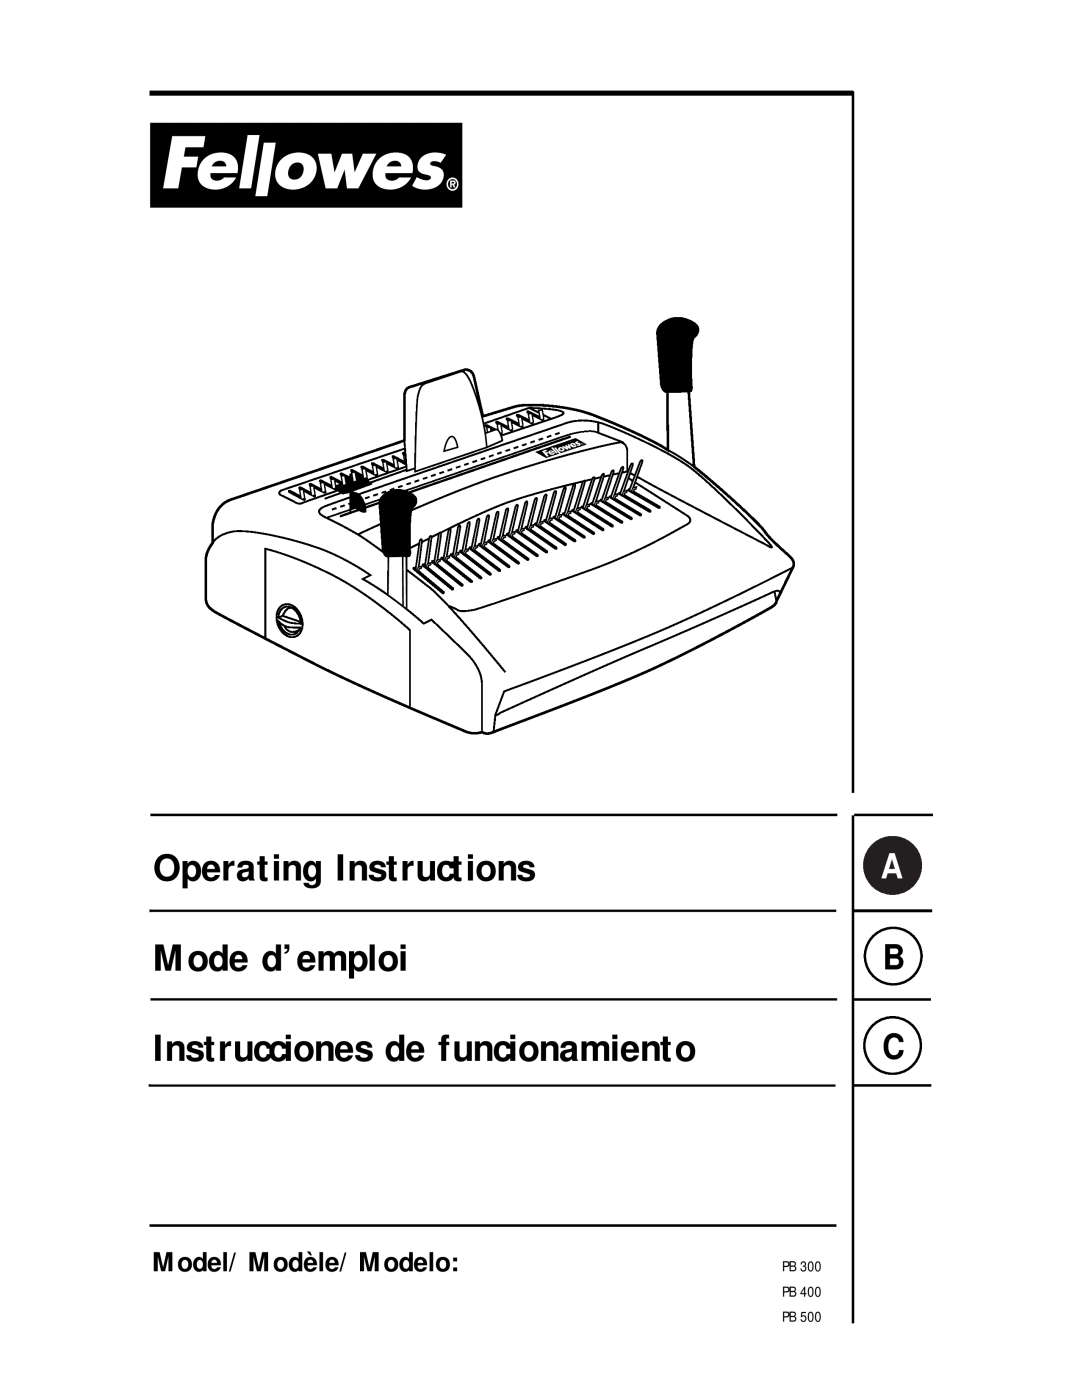 Fellowes PB 400, PB 300 manual Model/Modèle/Modelo, Operating Instructions Mode d’emploi, Instrucciones de funcionamiento 